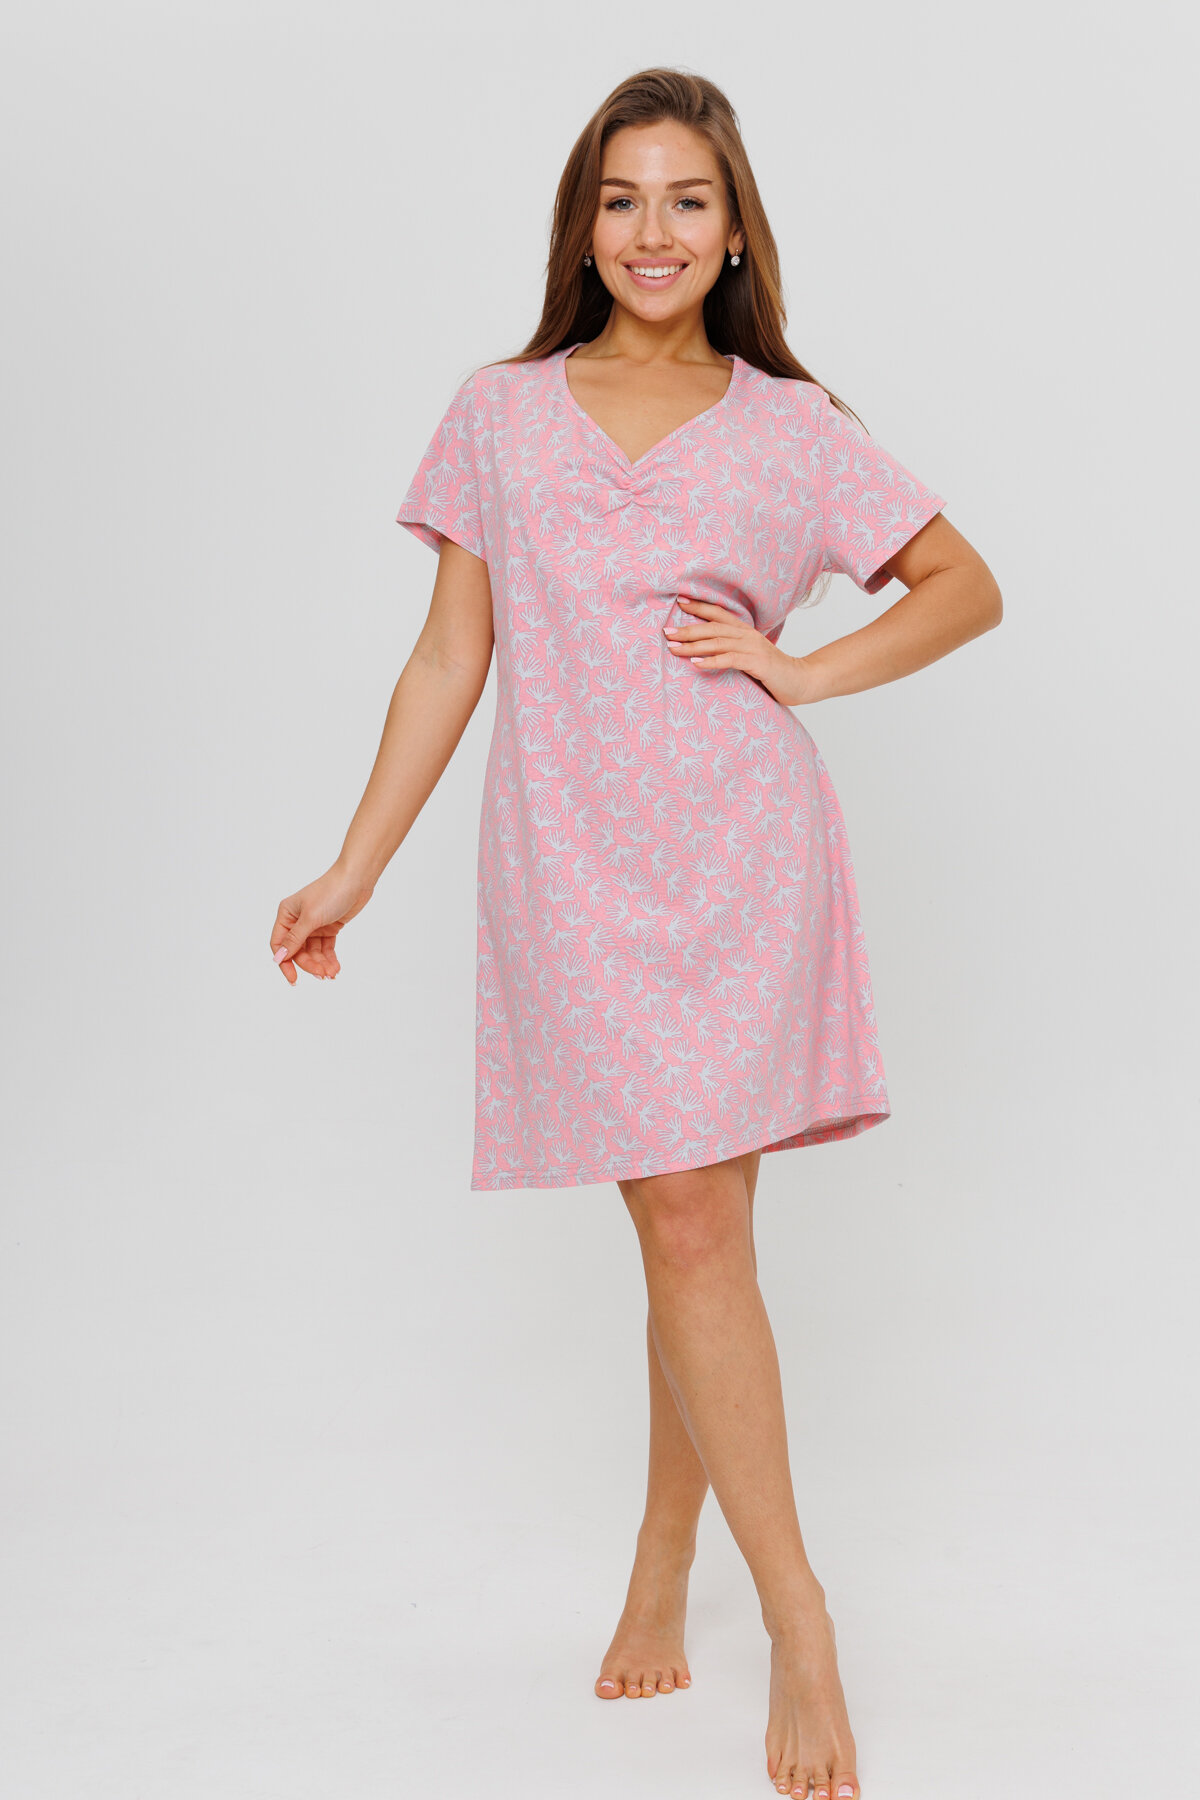 Женская ночная сорочка Modellini 1900/1 розовая, 54 размер - фотография № 1